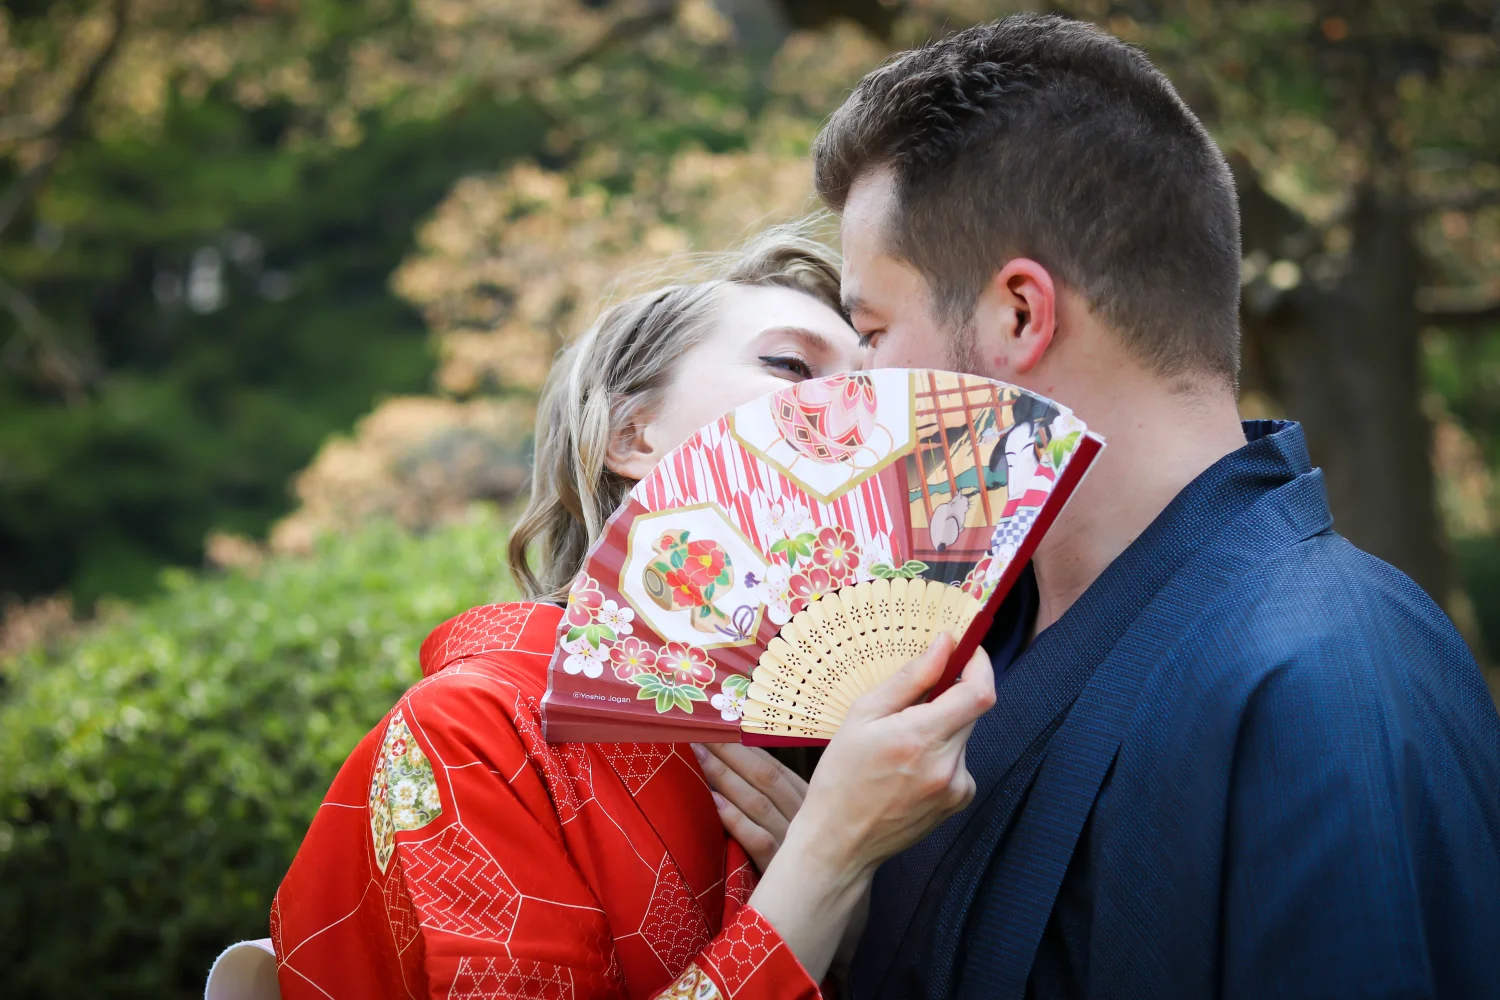 Take Fabulous Kimono Photos in Tokyo